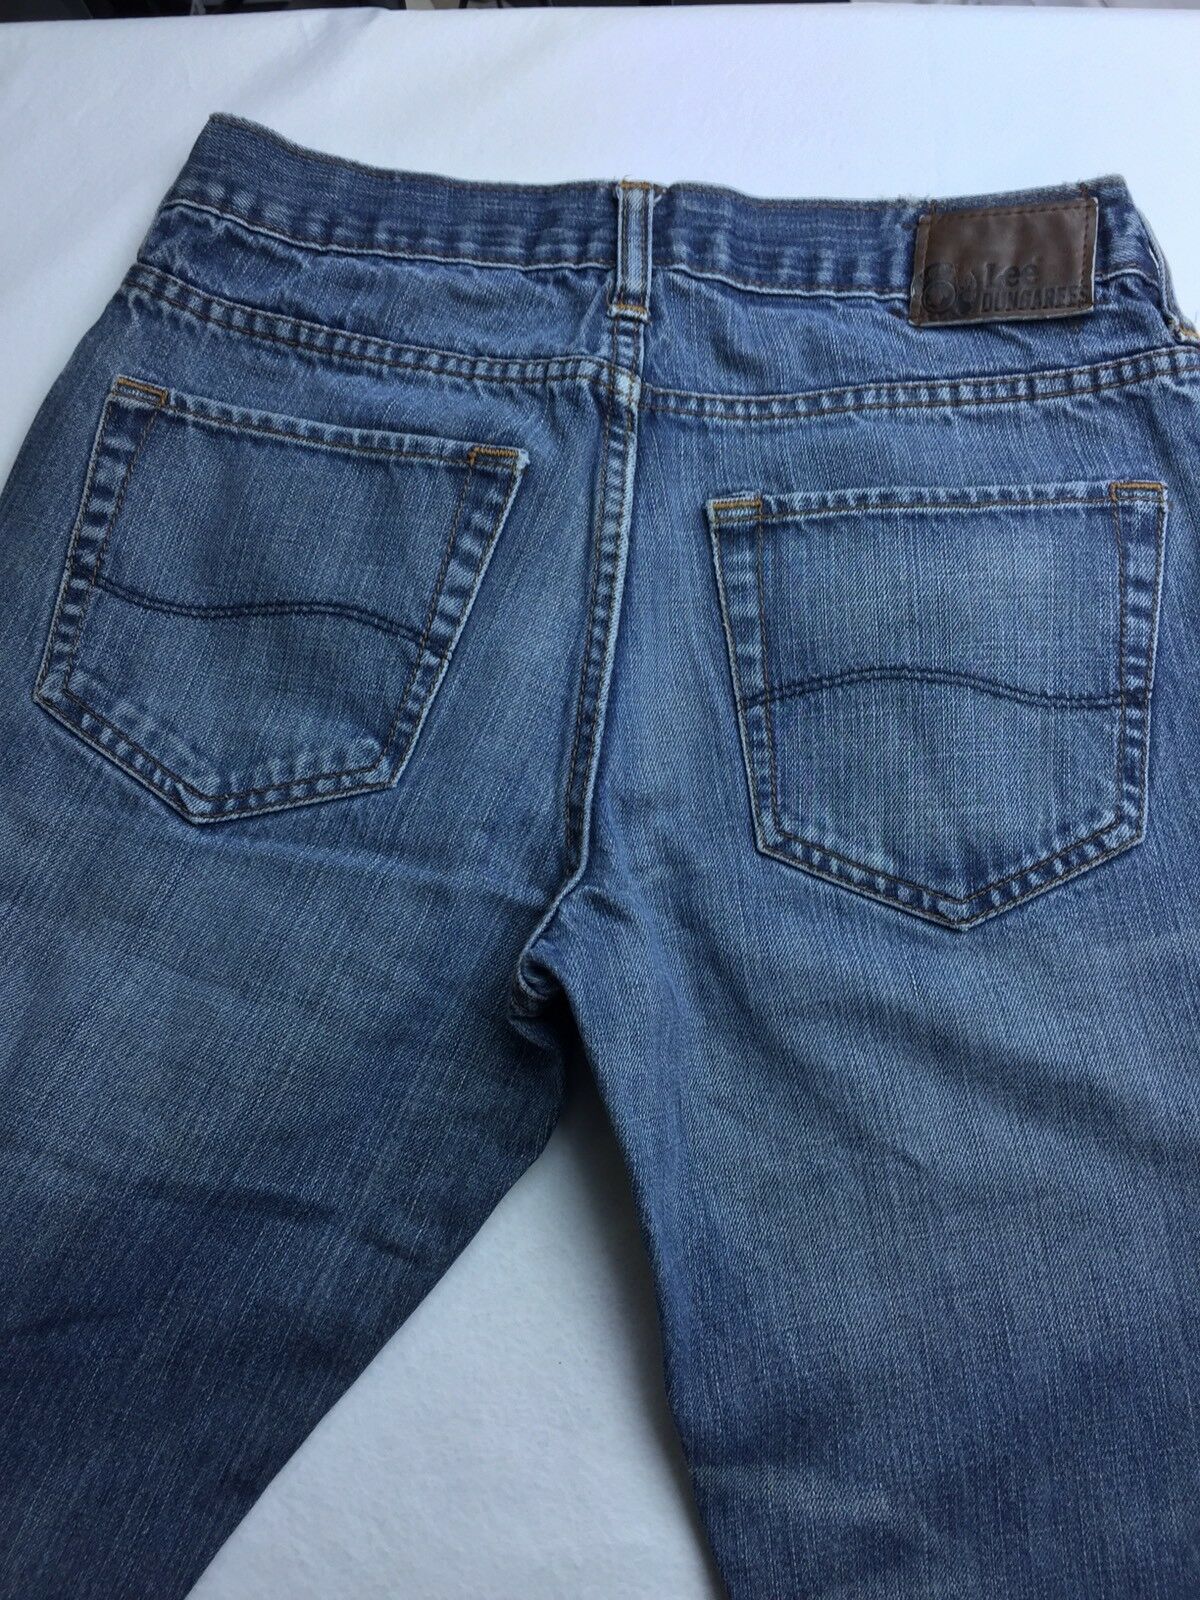 MEN'S Lee Jeans Size 30X30 Premium Vintage Slim Blue Denim - Jeans